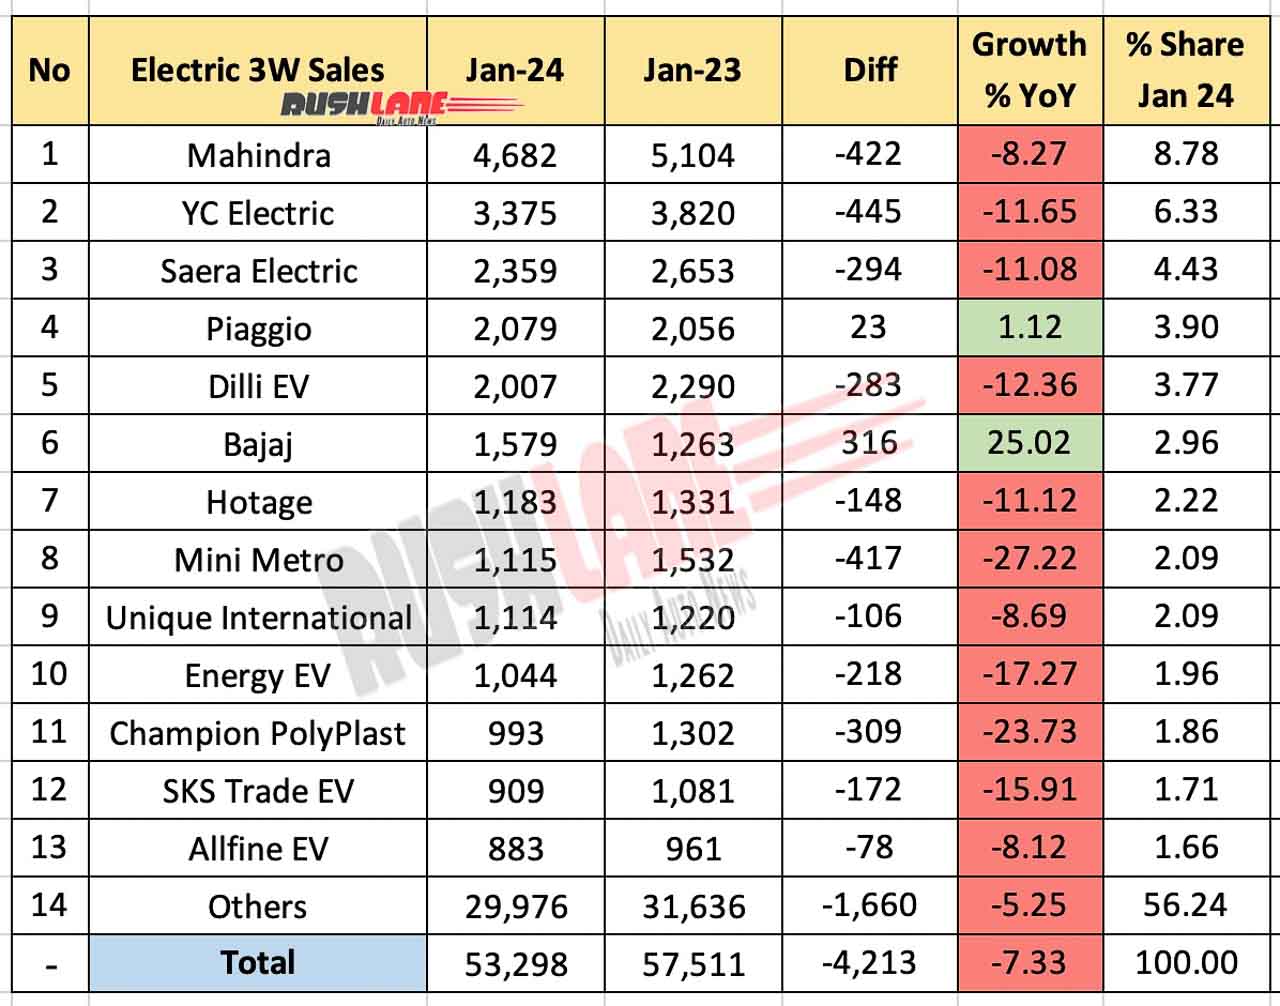 Electric 3W / Rickshaw Sales Jan 2024 vs Jan 2023 - YoY Comparison